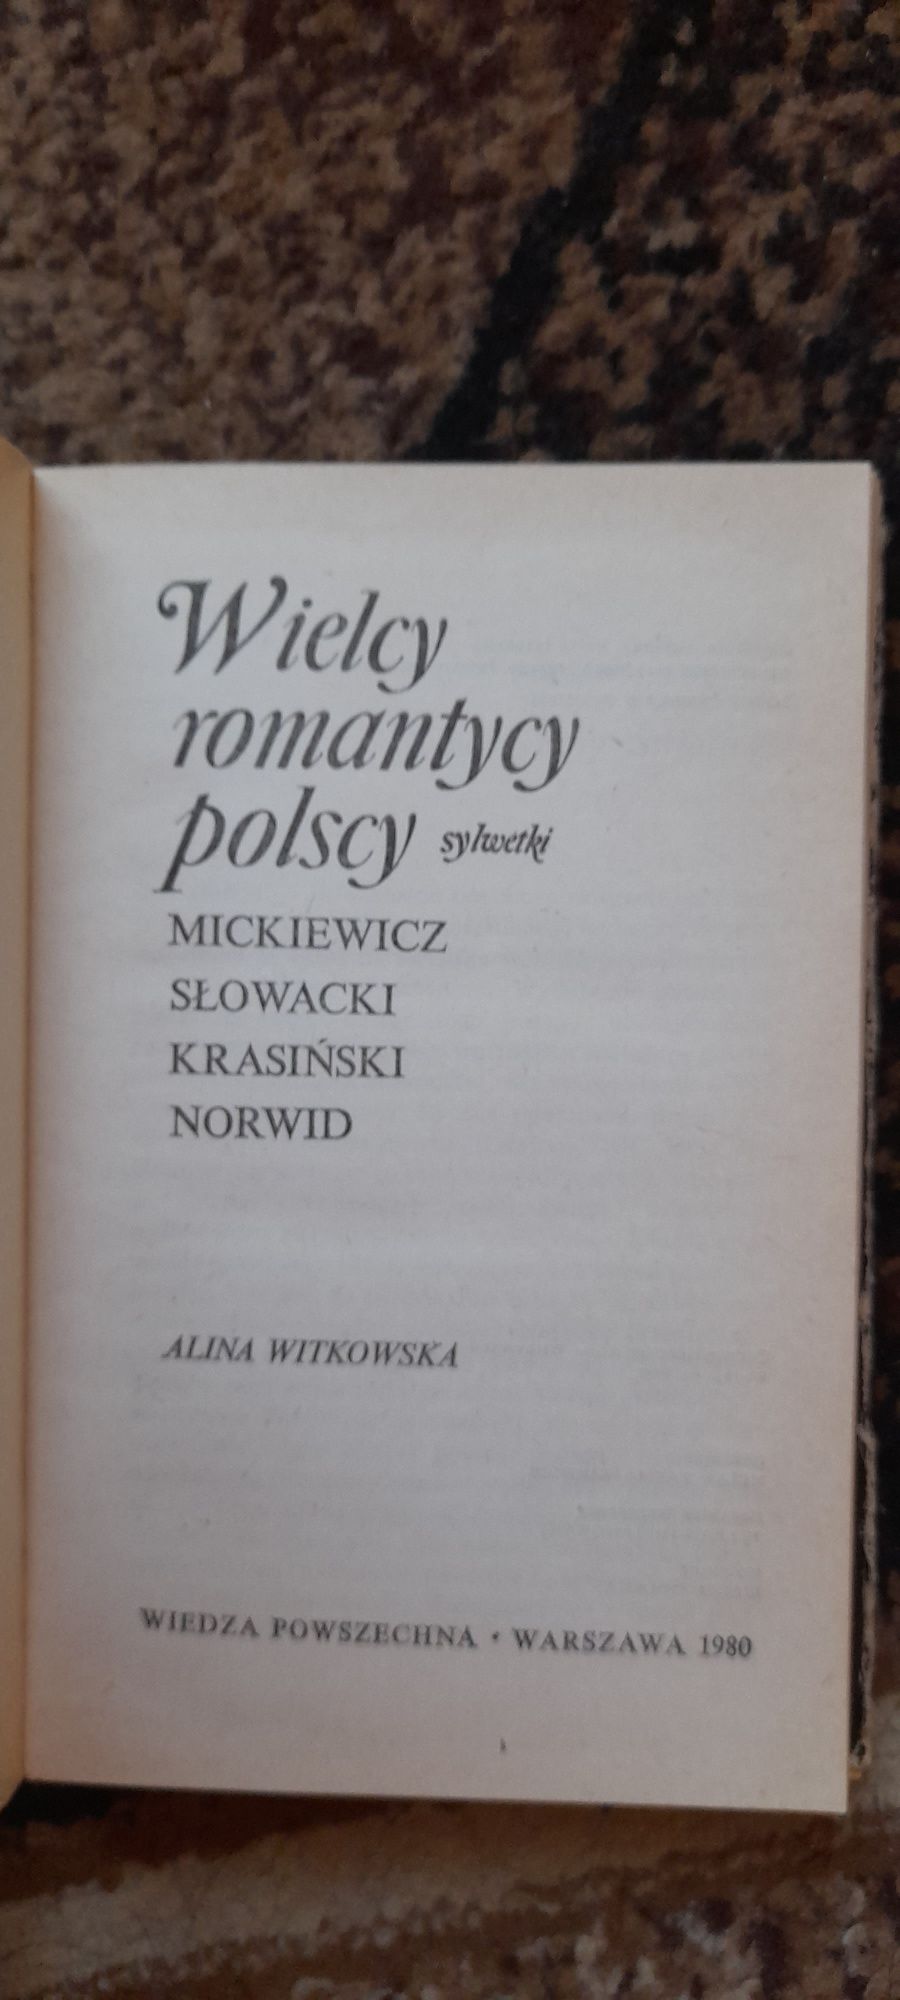 Wielcy romantycy polscy - Alina Witkowska wyd I 1980